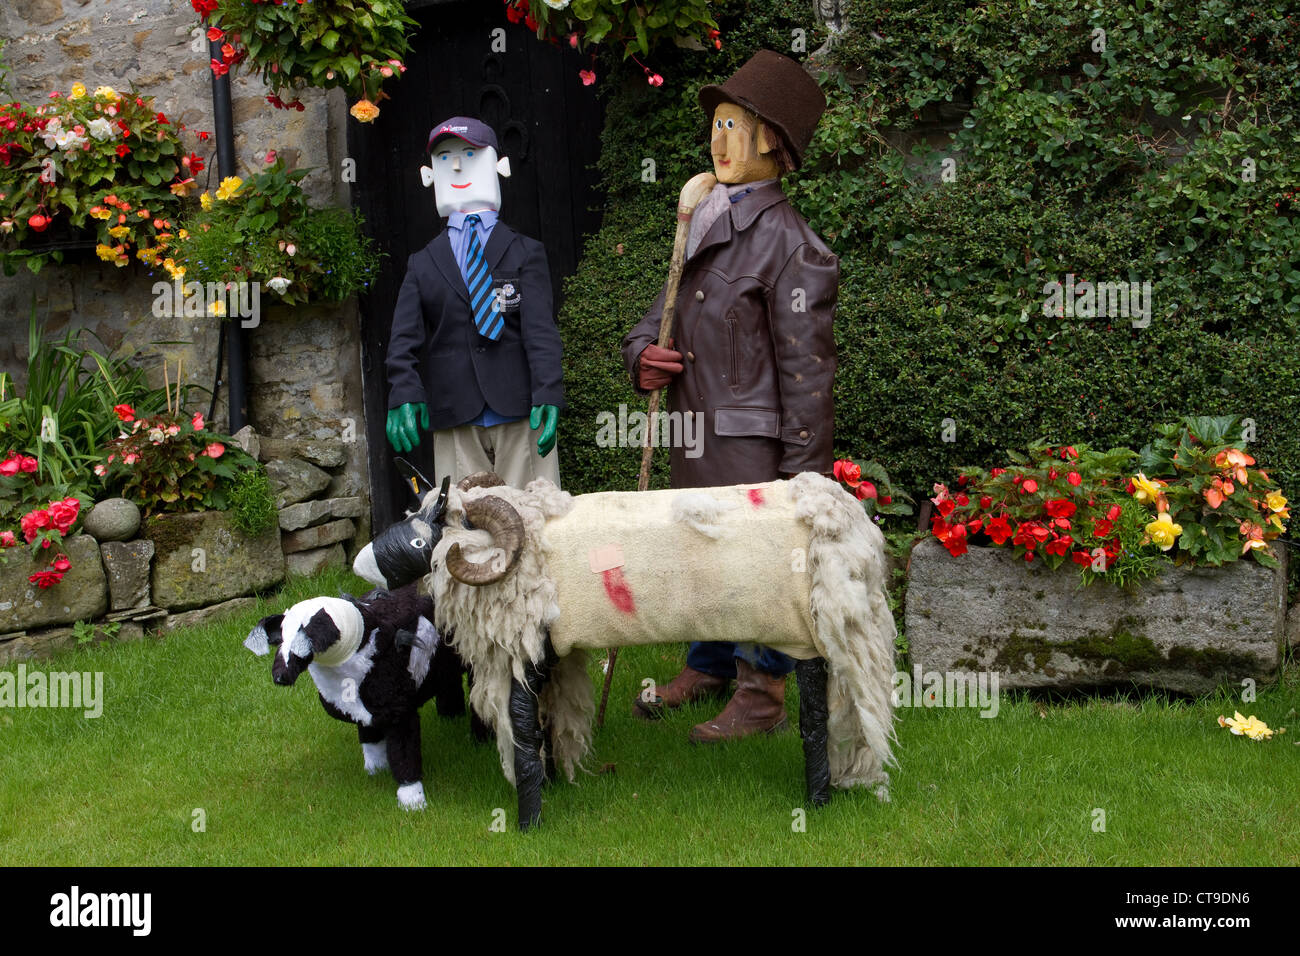 Farcite spaventapasseri festival animali e figure, pecore & cane, su giardino Open Day in Sud vista Farm, Bellerby, Richmondshire, North Yorkshire Dales, REGNO UNITO Foto Stock